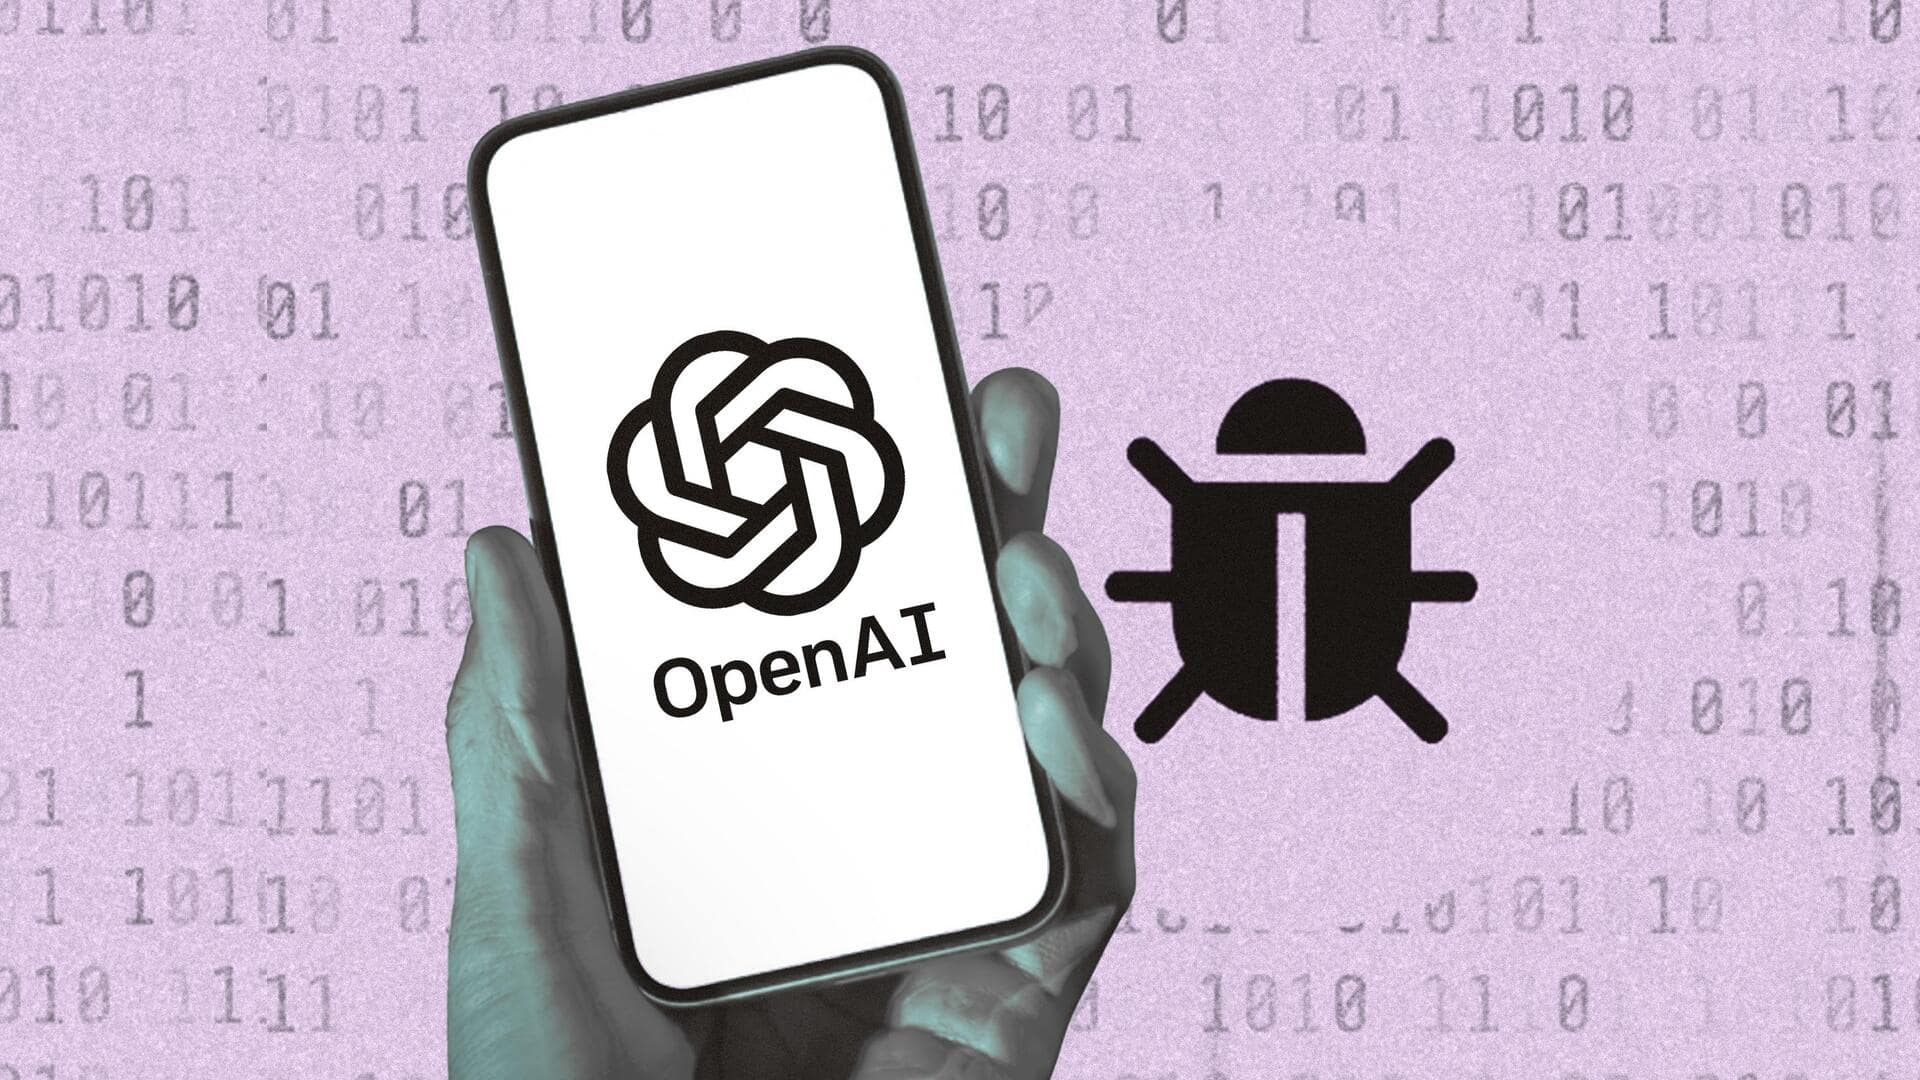 OpenAI बग खोजने वालों को देगी 16 लाख रुपये का इनाम, शुरू हुआ बाउंटी प्रोग्राम   